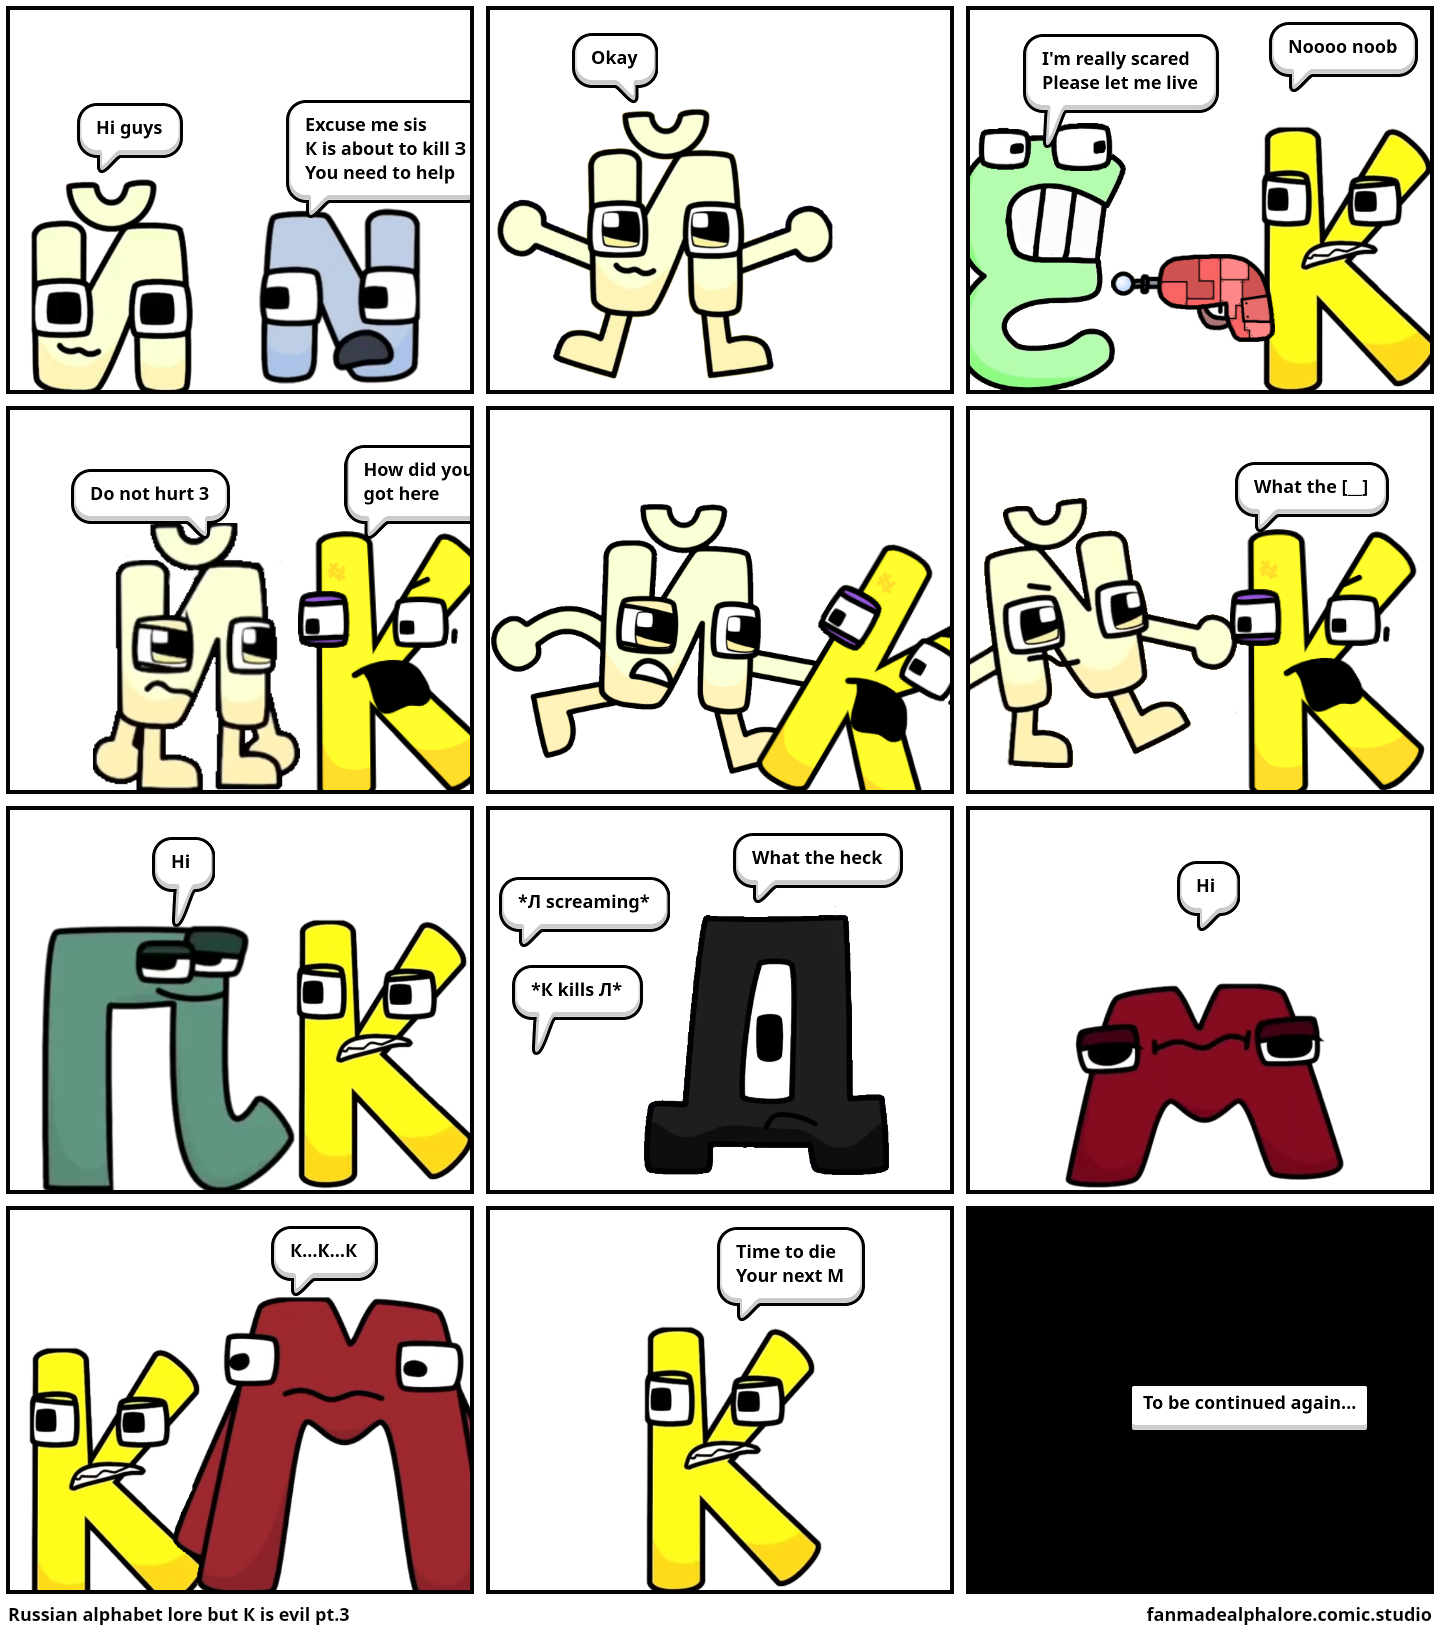 Alphabet Lore But K is the villain - Comic Studio